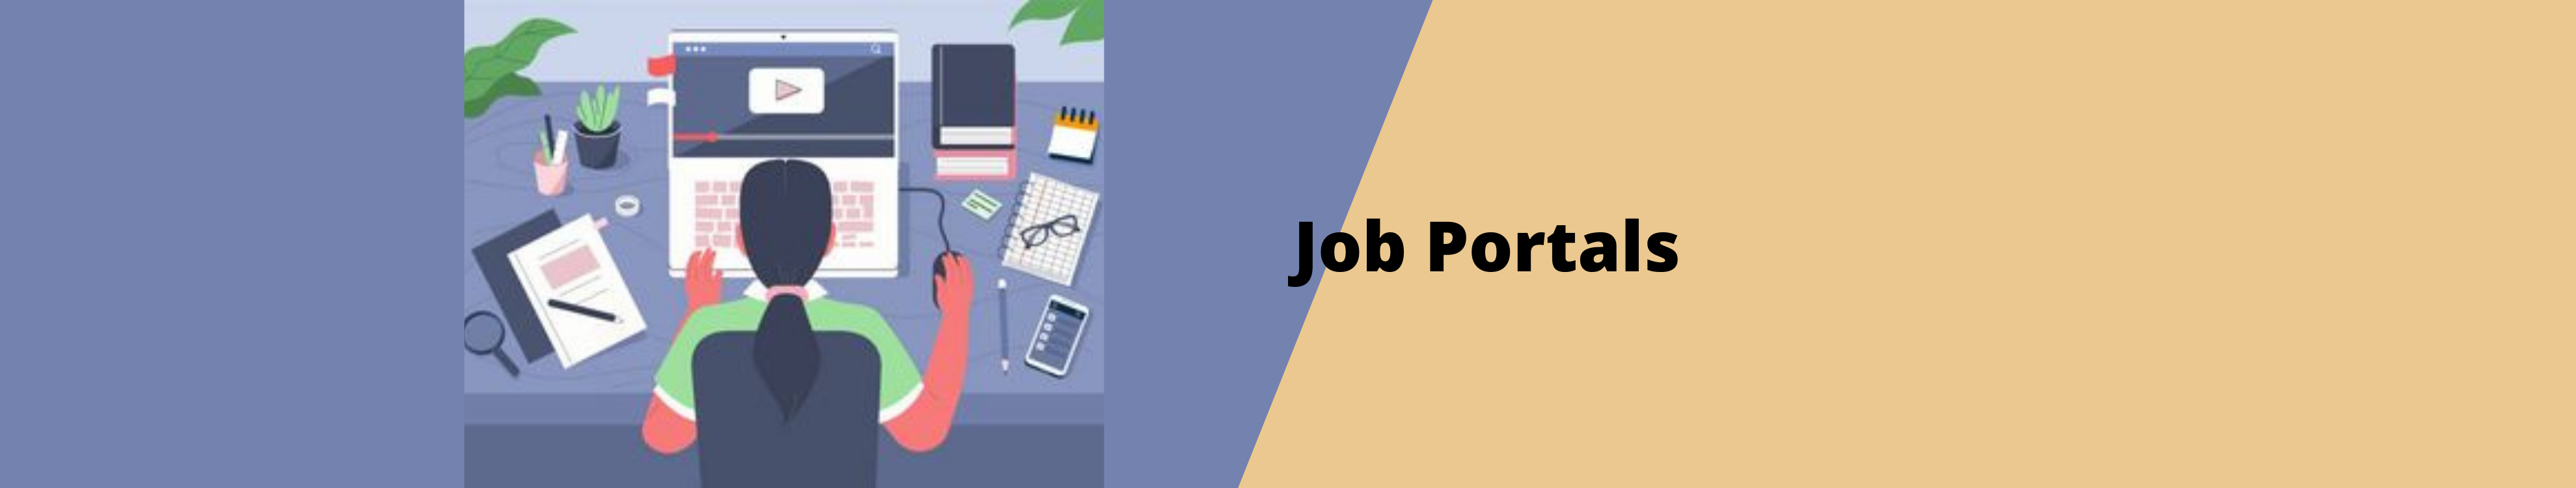 Job portals